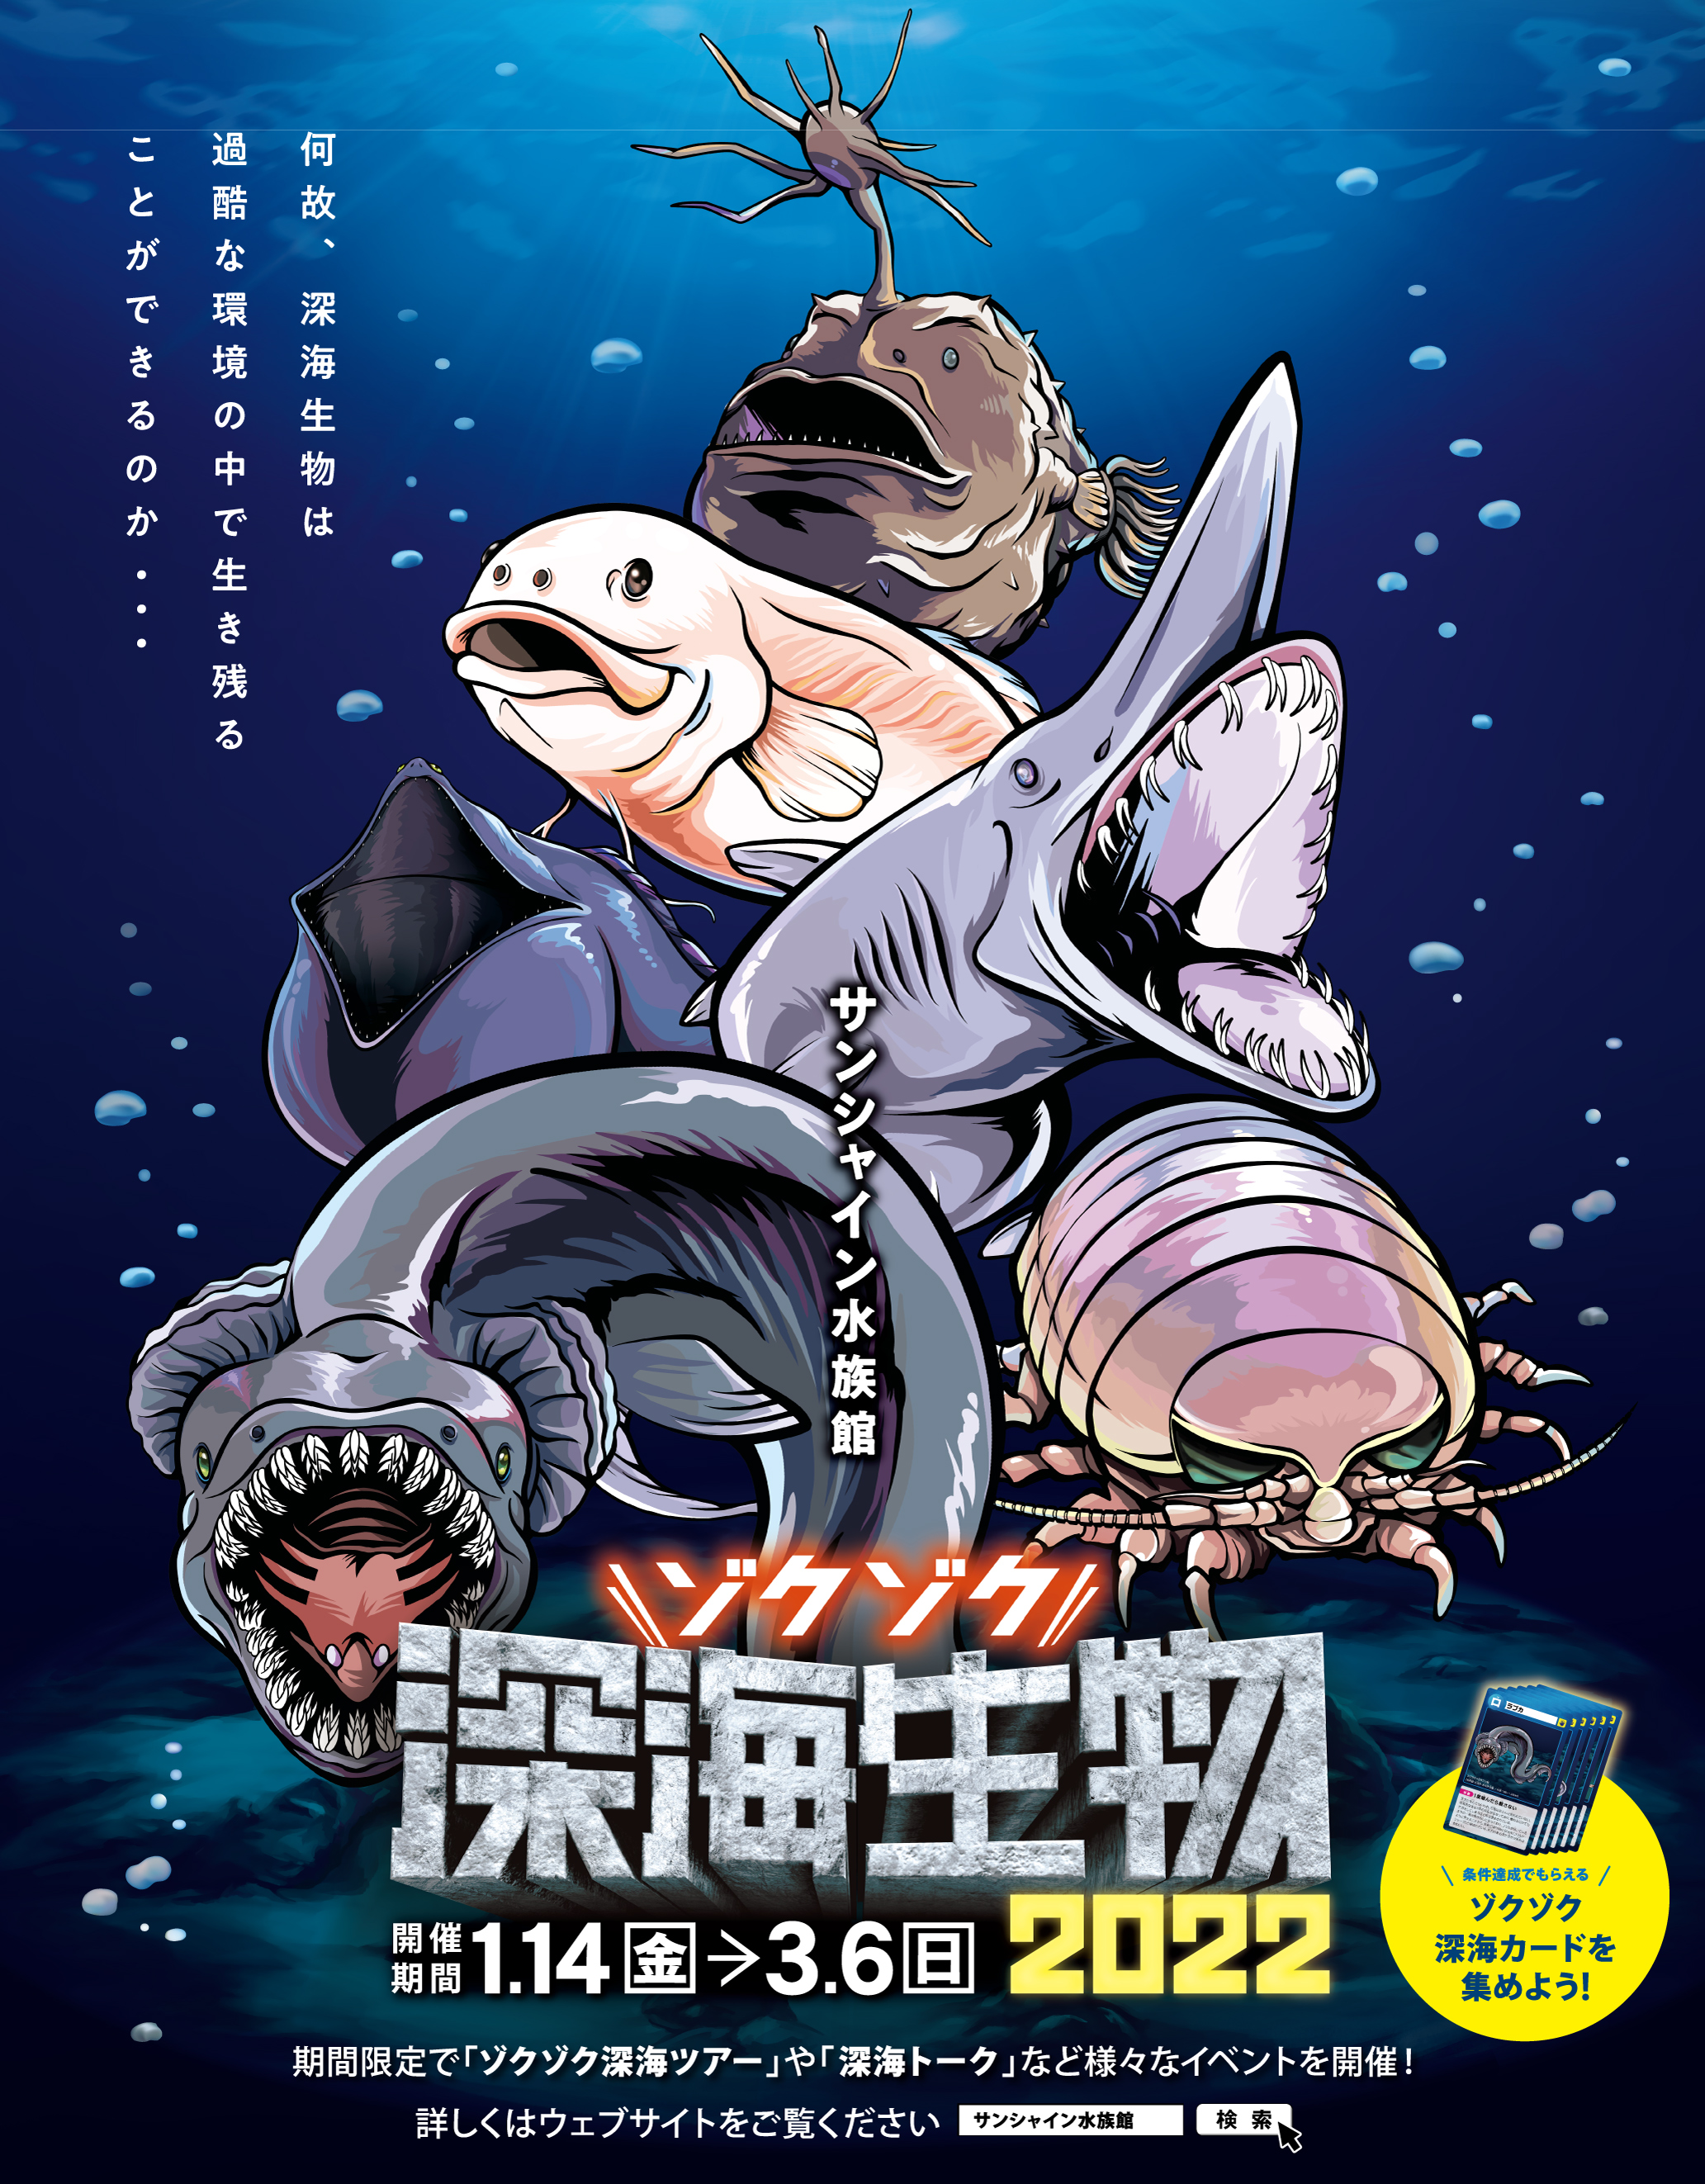 サンシャイン水族館 ゾクゾク深海生物22 株式会社サンシャインシティのプレスリリース